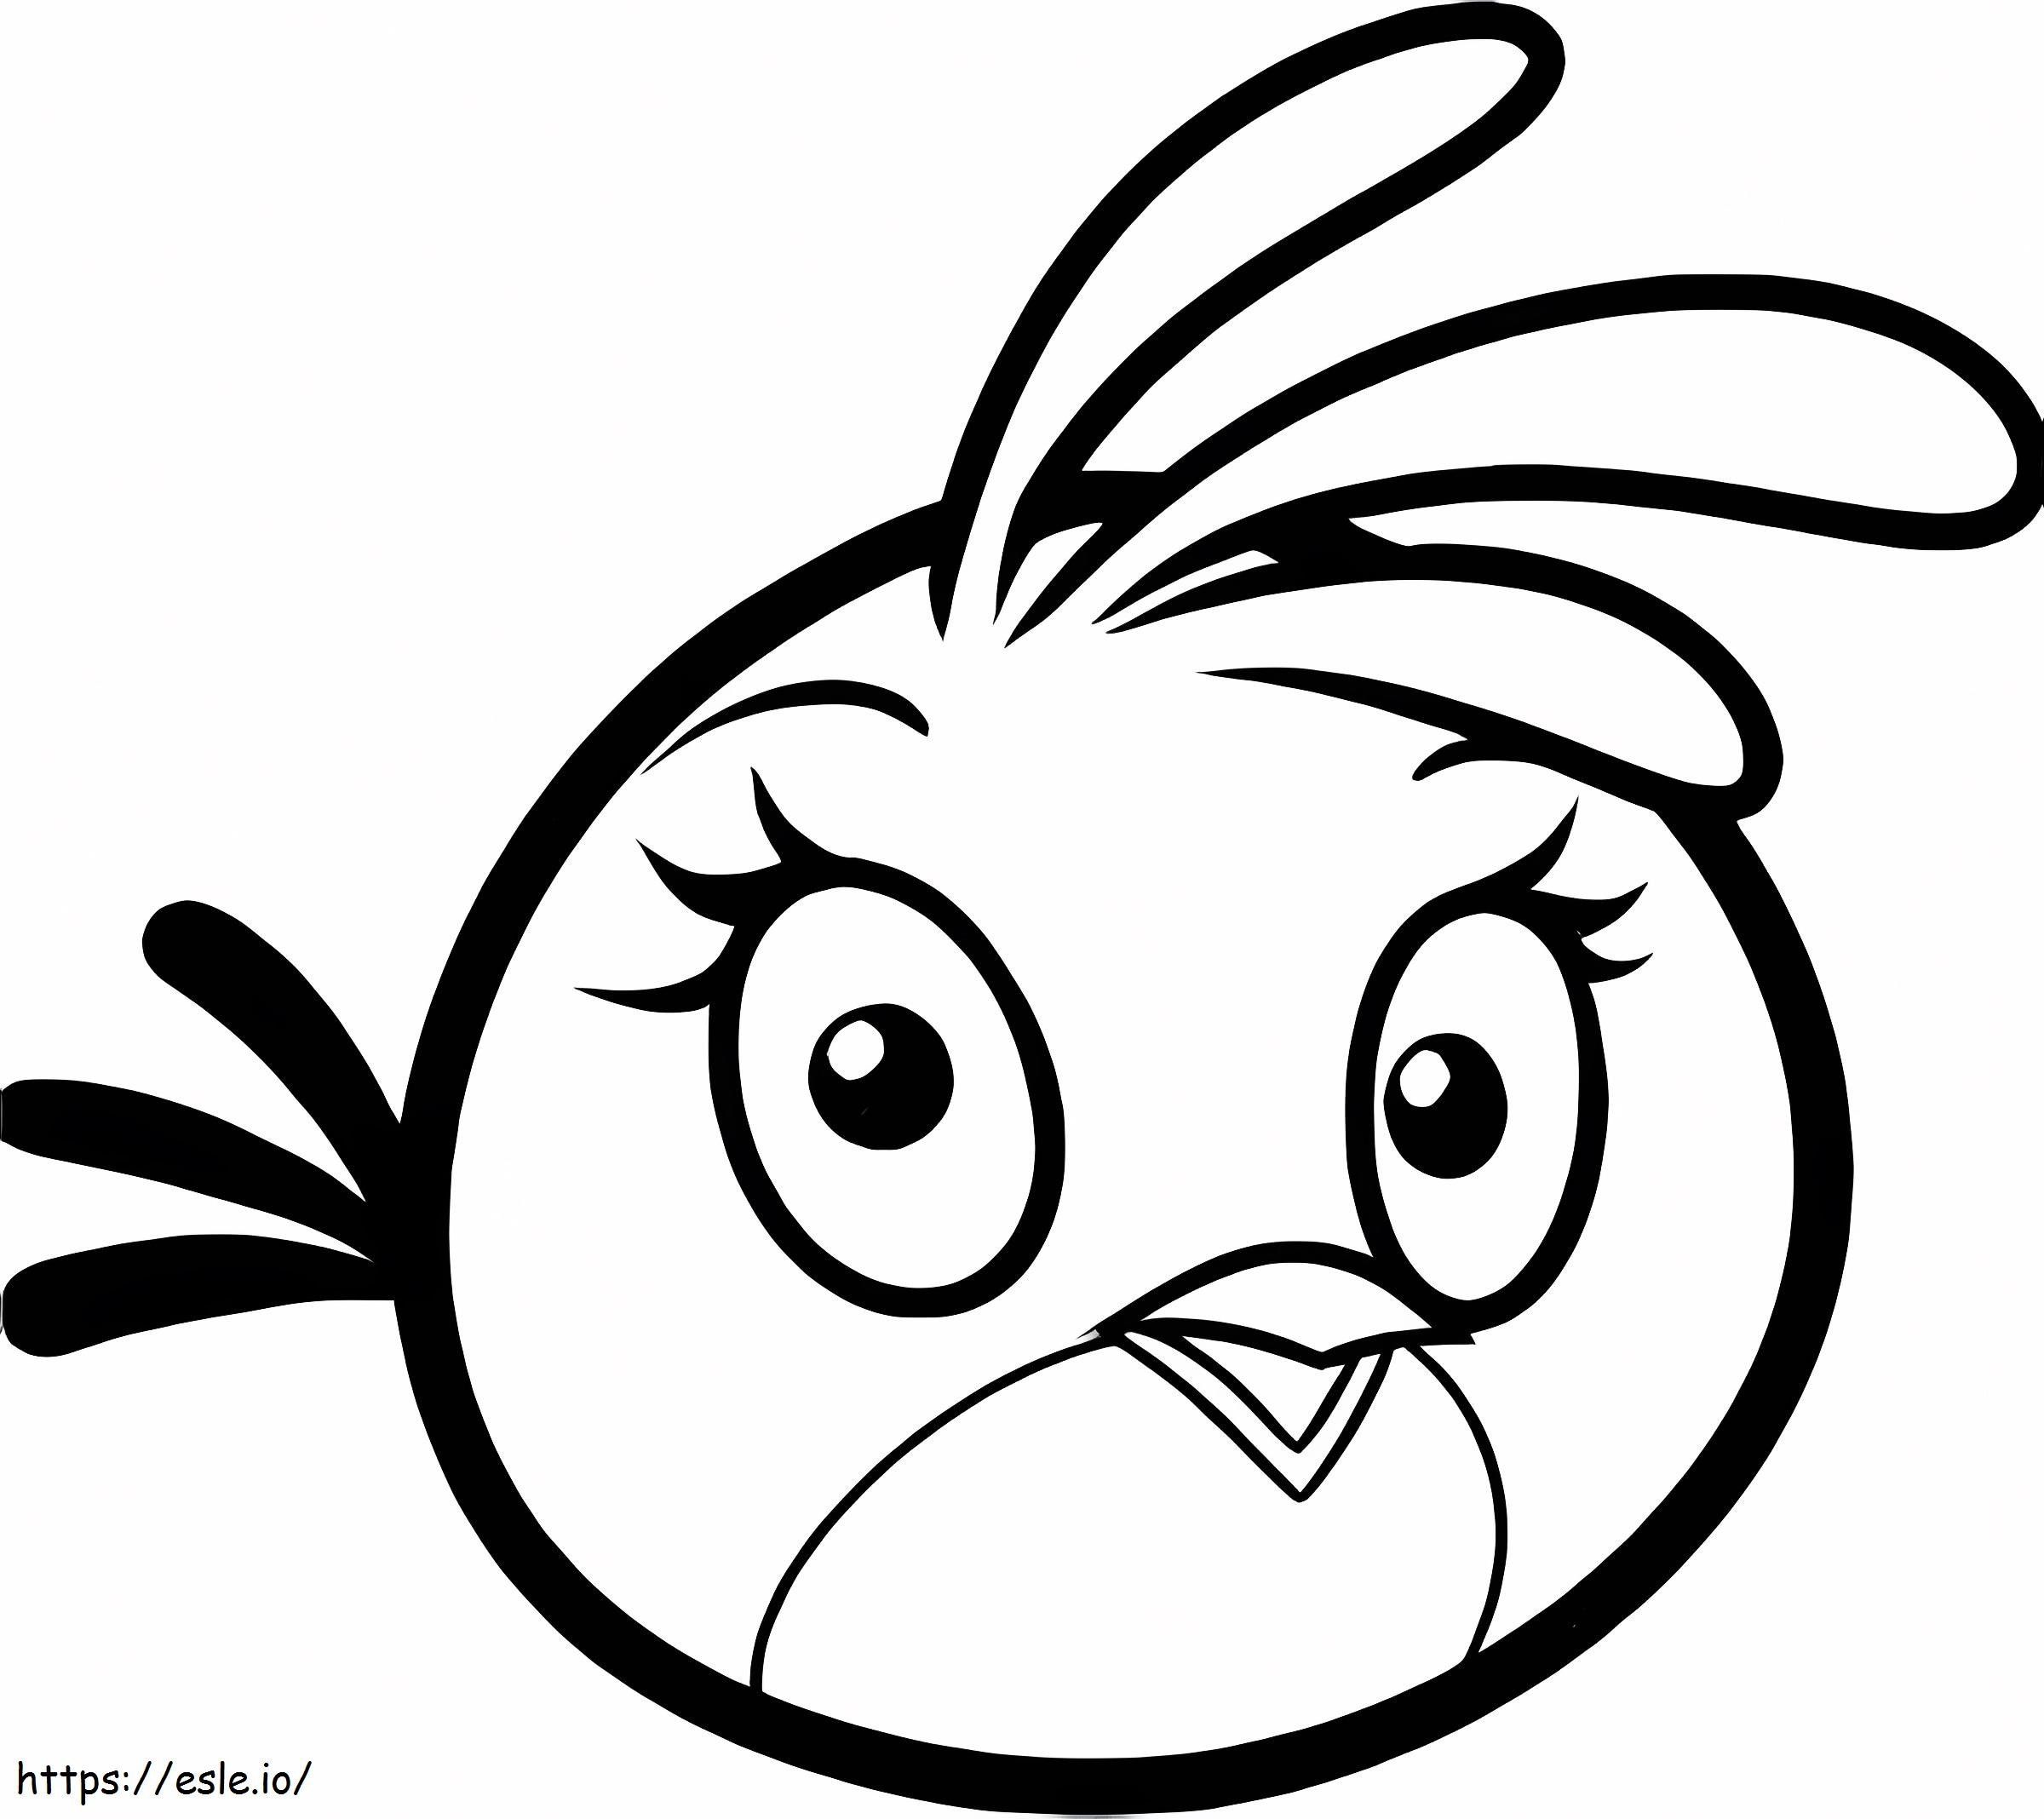 Wunderschöne Angry Birds Stella ausmalbilder